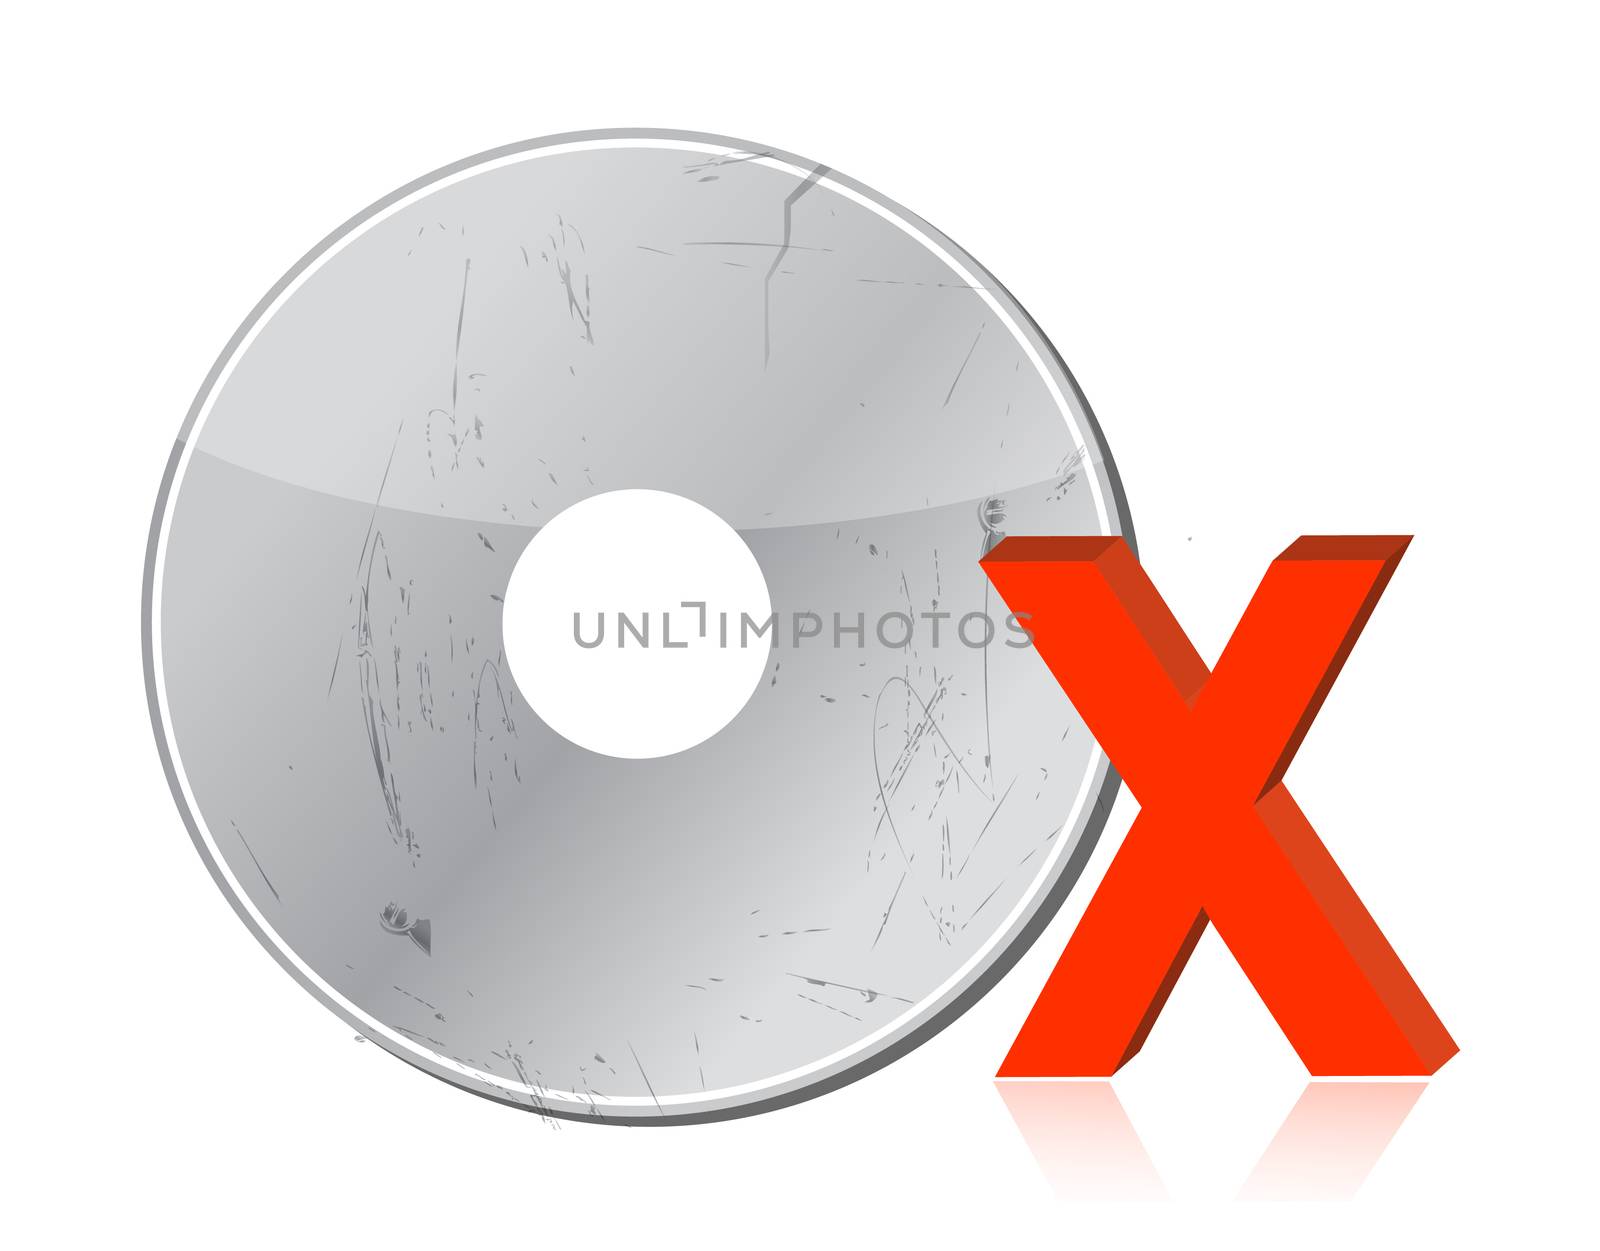 Damaged CD-ROM illustration design by alexmillos